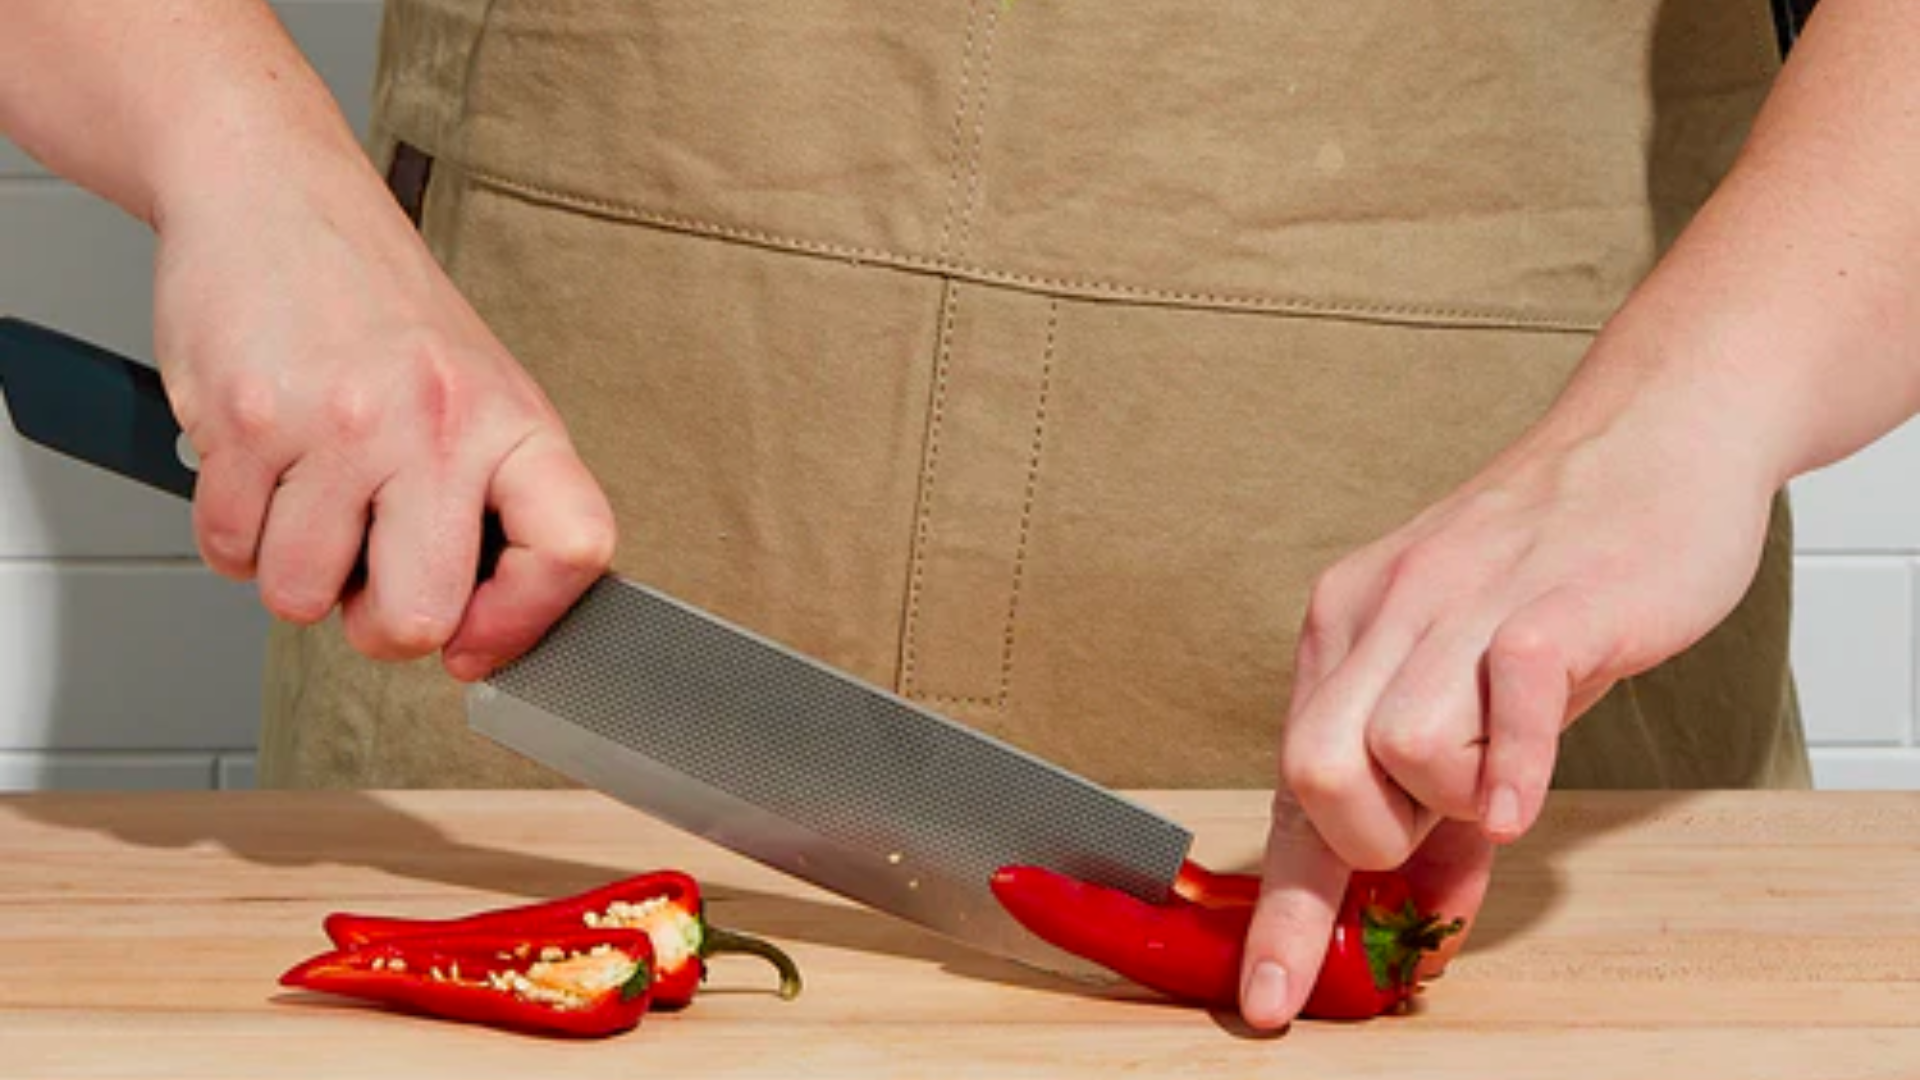 Nakiri, a Japanese Knife Designed for Vegetables - The New York Times